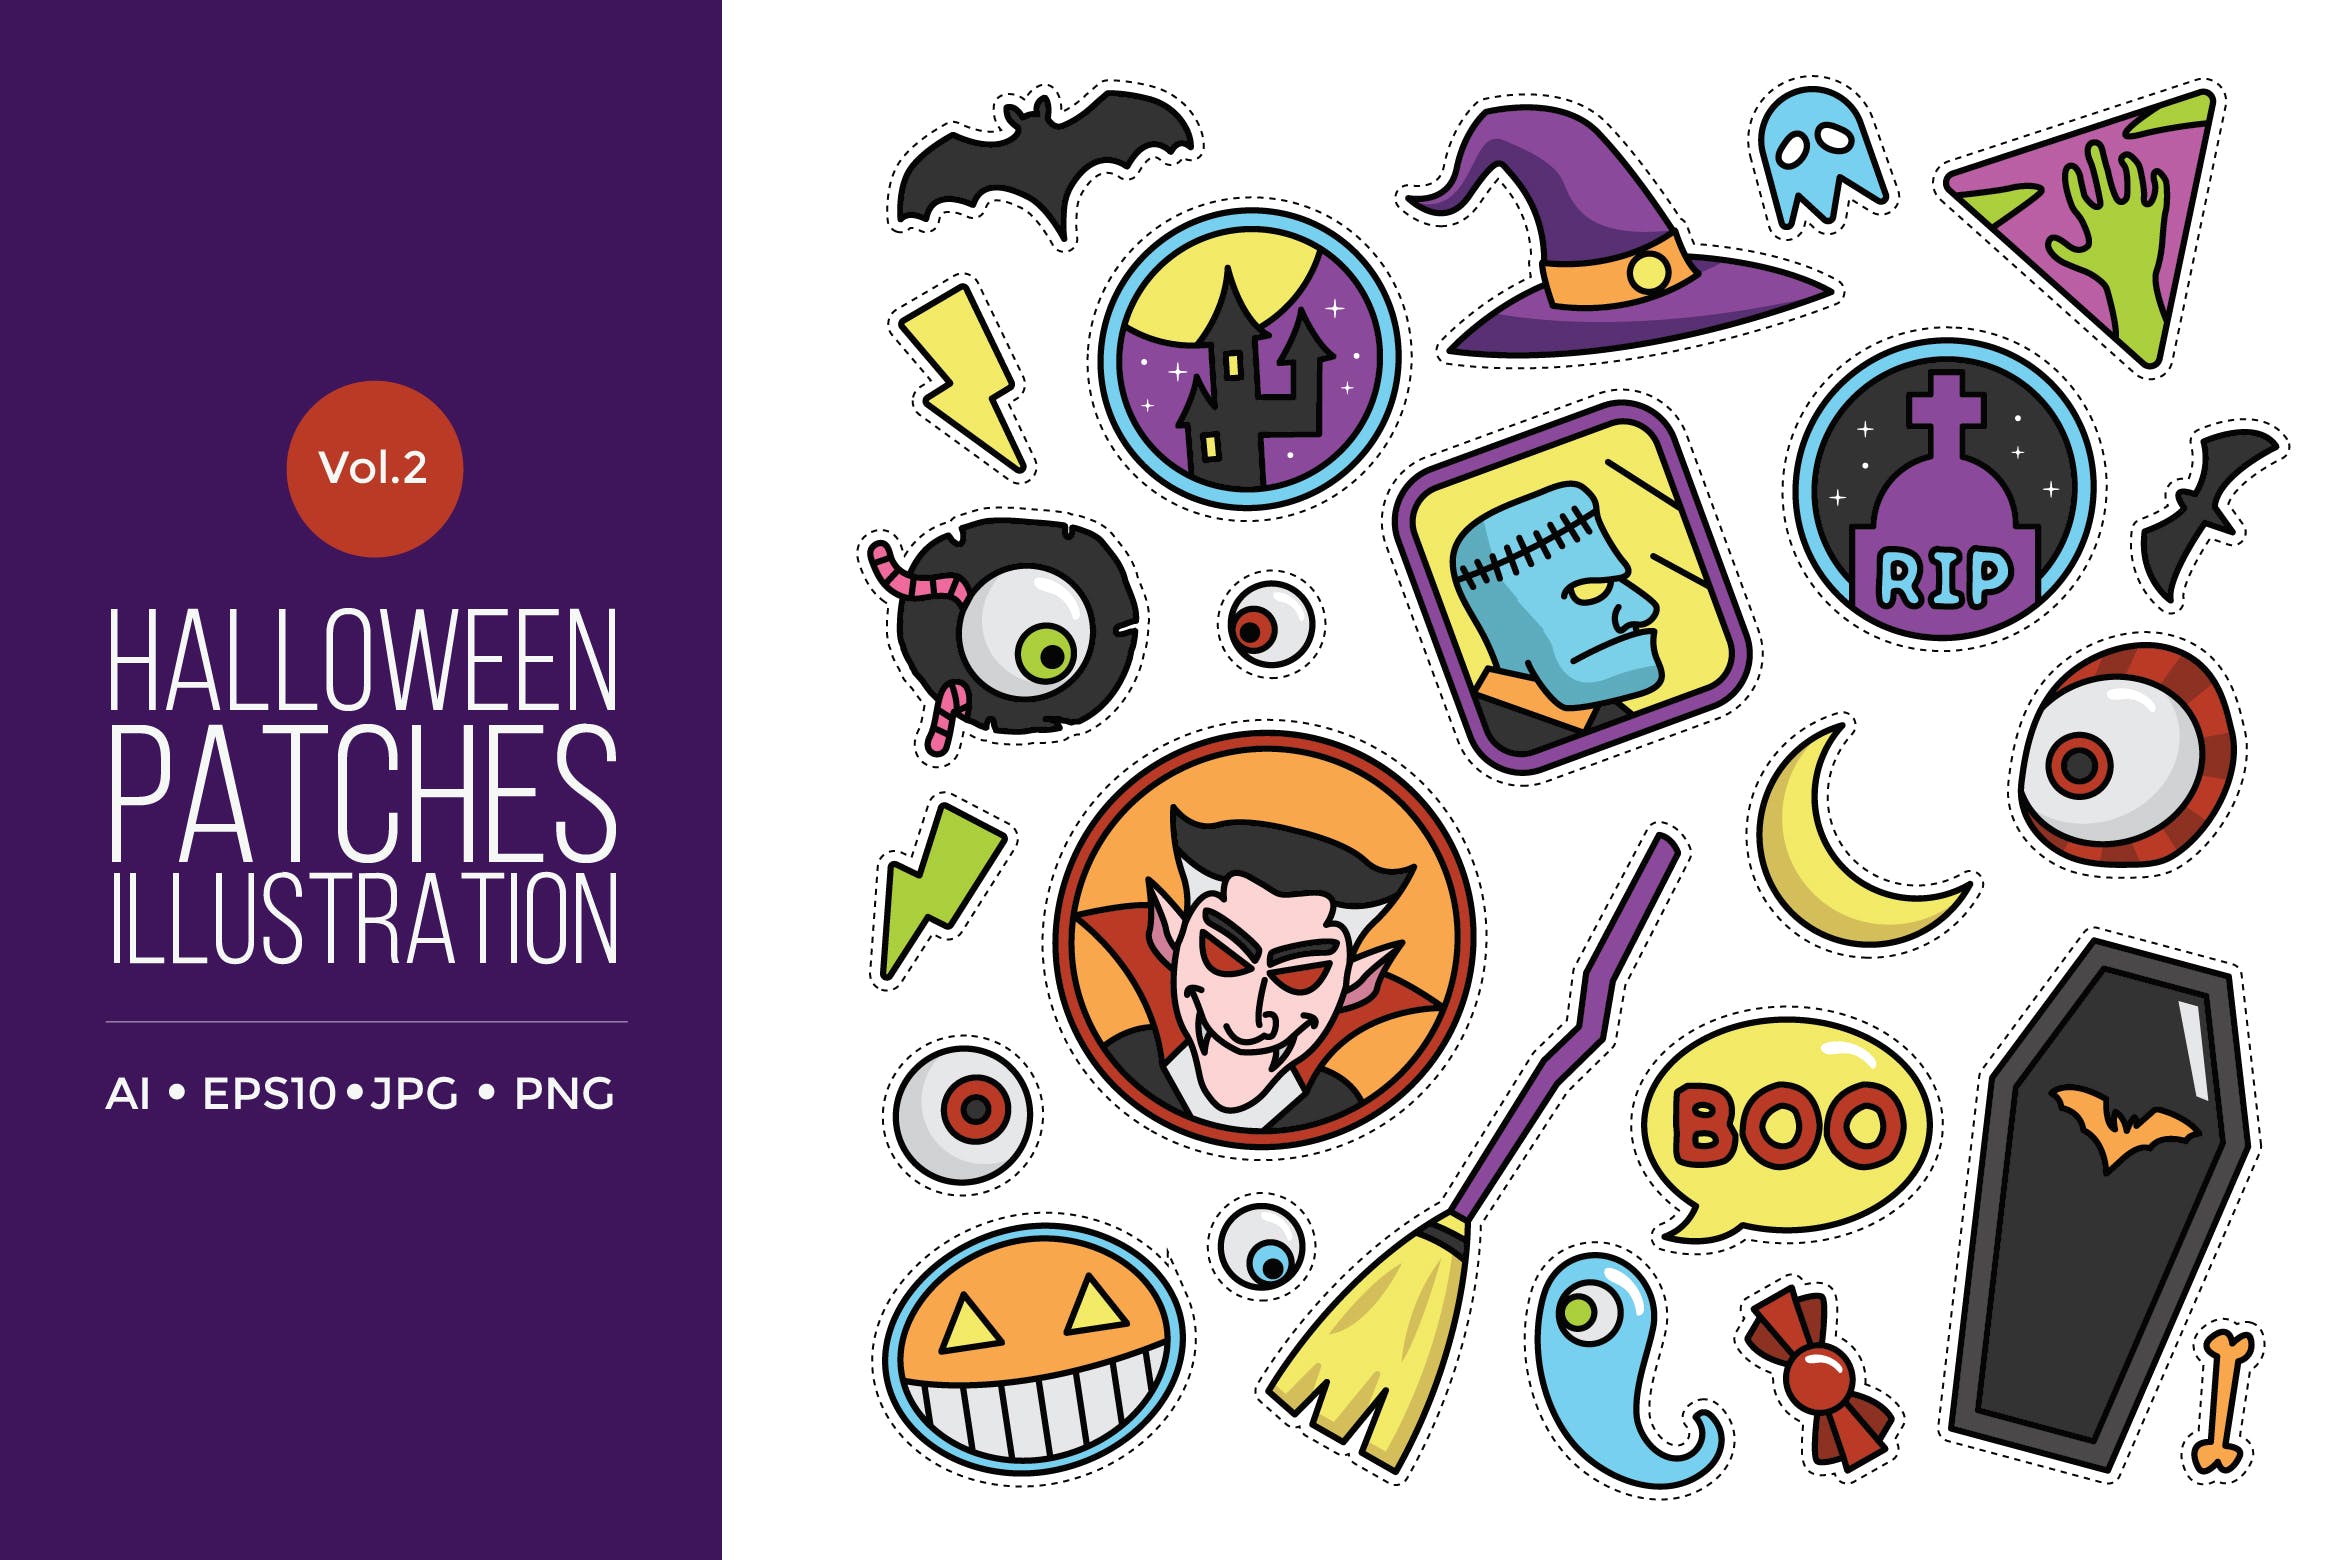 可爱风格万圣节贴纸图案矢量图形素材v2 Cute Happy Halloween Patches Vol.2插图